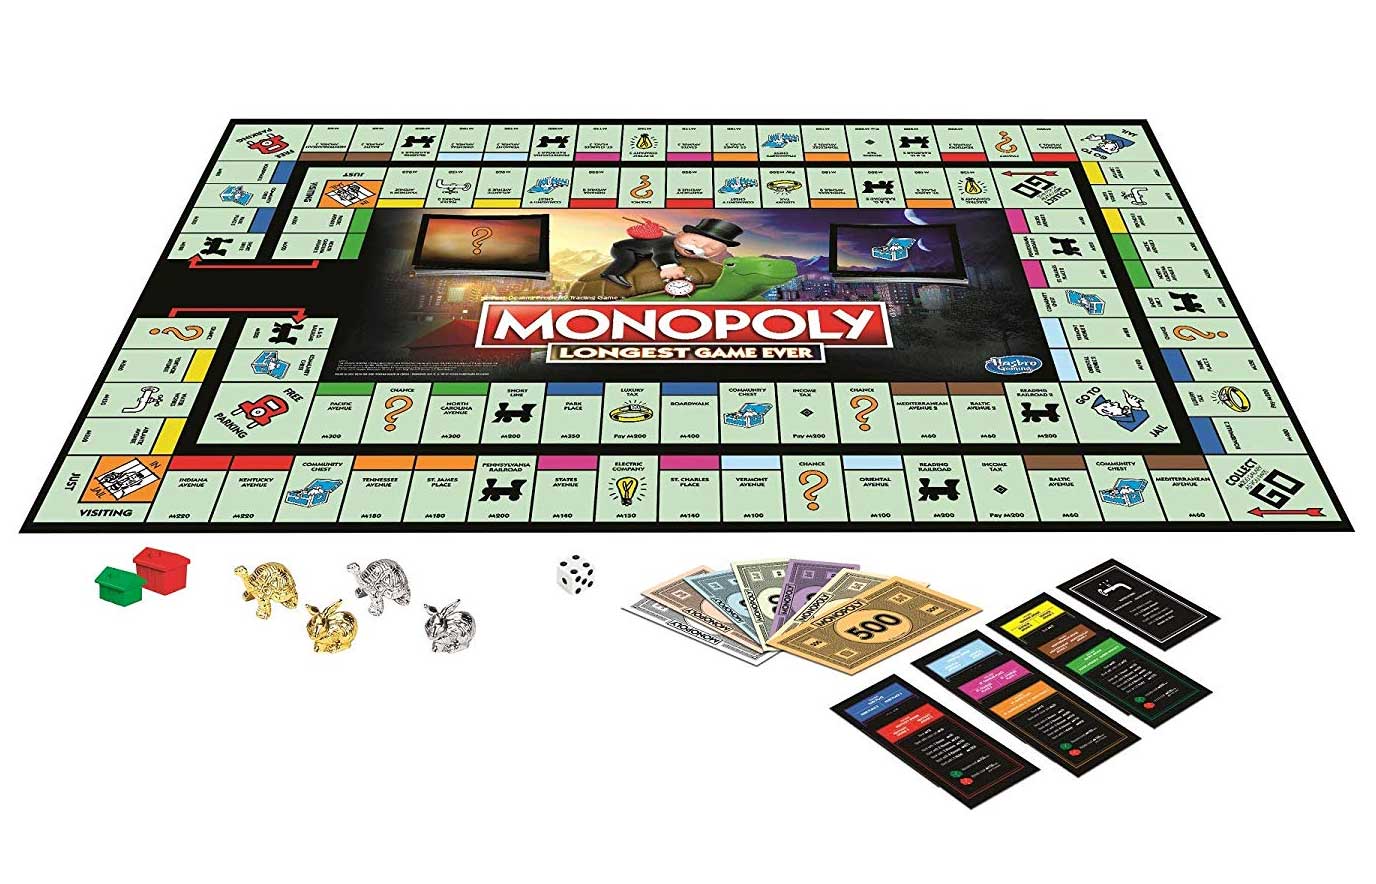 Das längste Monopoly-Spiel der Welt: „Longest Game Ever“